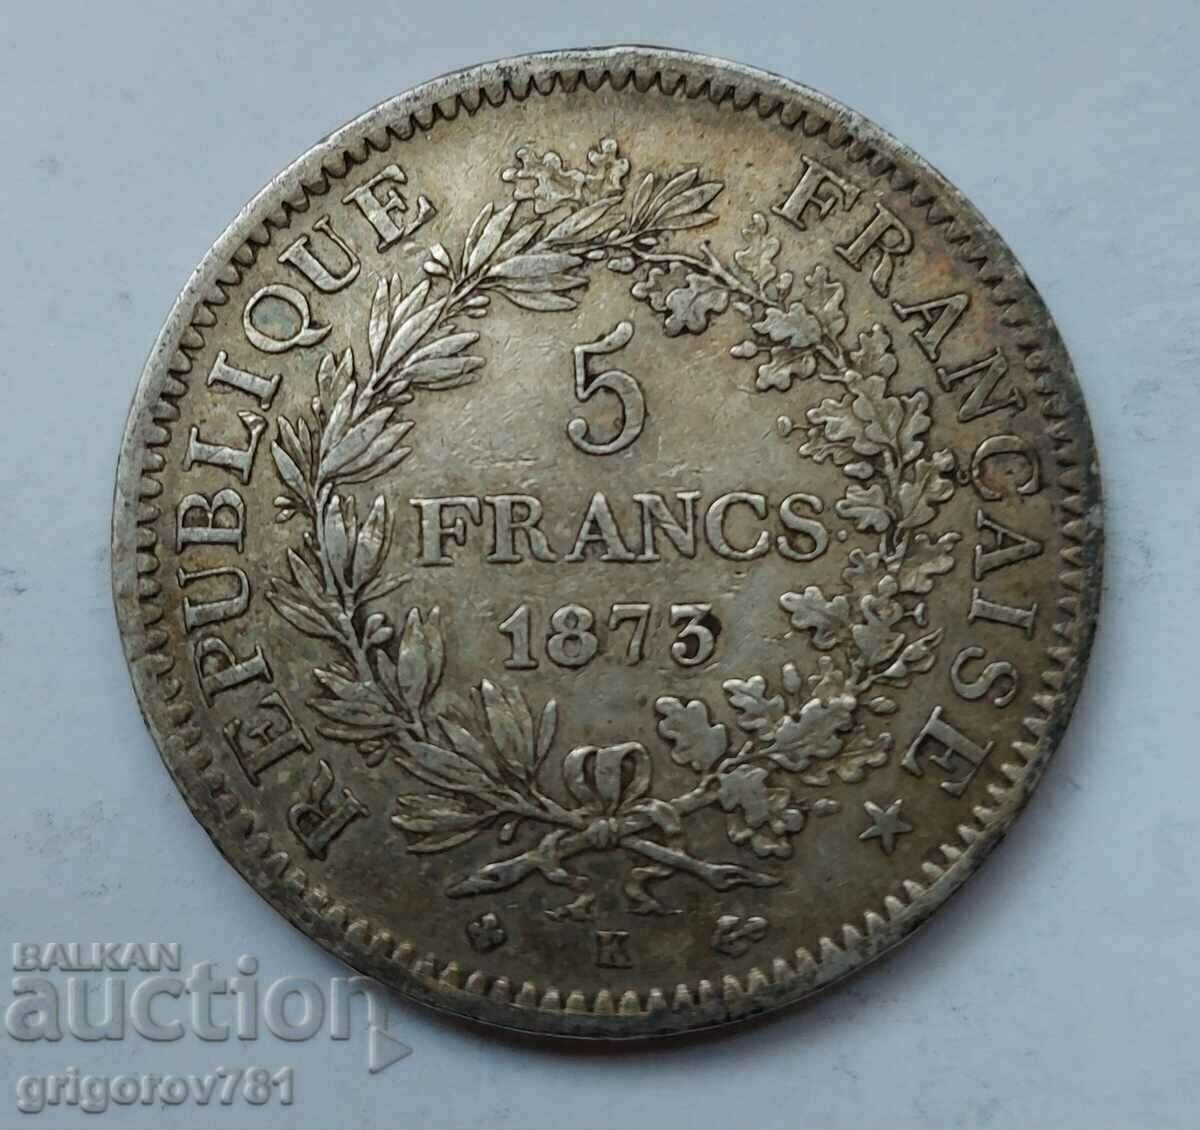 5 Franci Argint Franta 1873 K - Moneda de argint #210